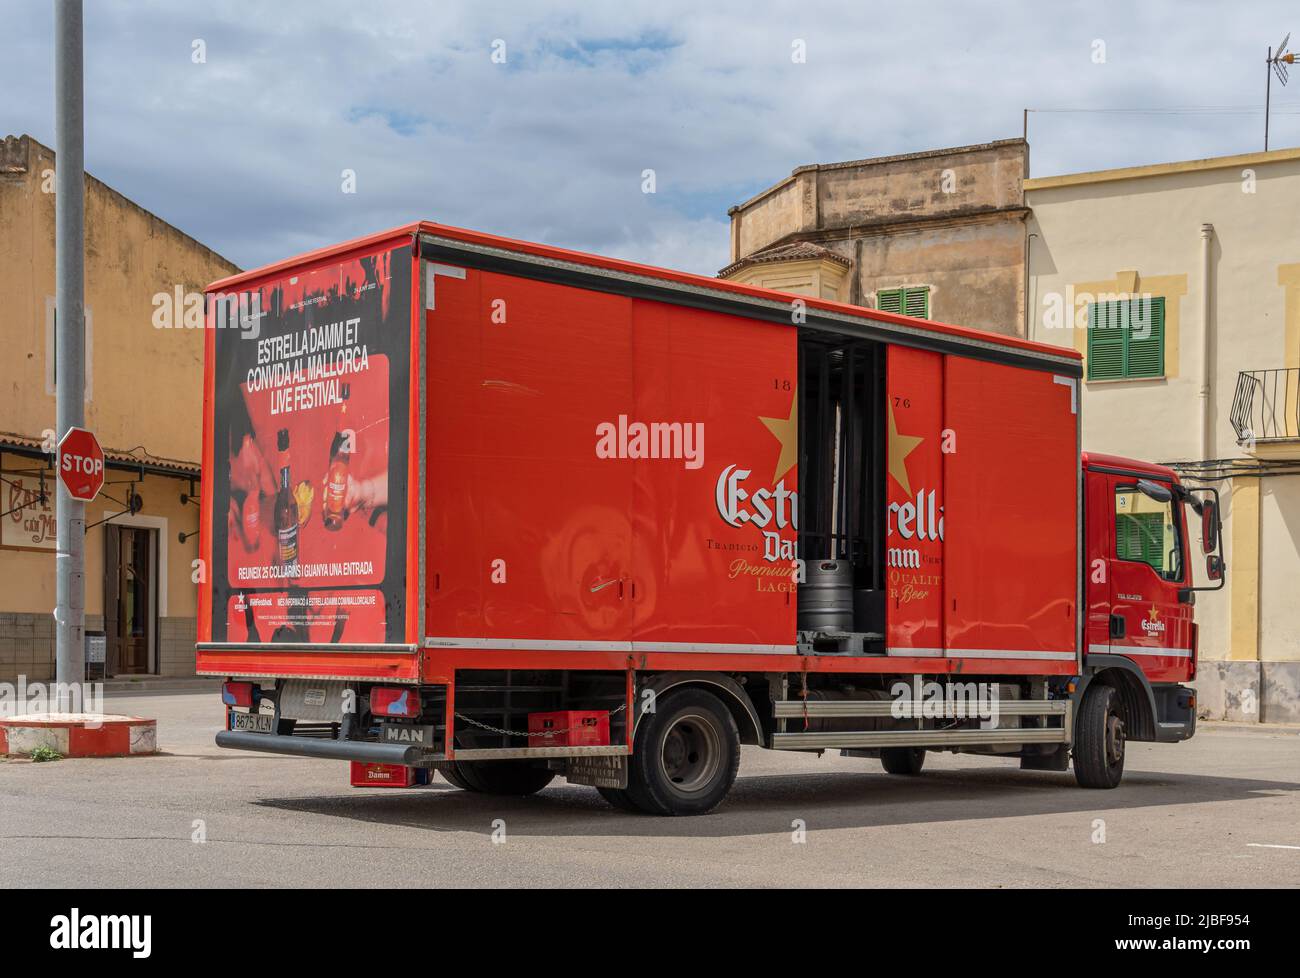 Felanitx, Espagne; mai 27 2022: Camion de livraison de bière rouge de la marque espagnole Estrella Damm, garée dans la rue pour faire la livraison. Felanitx, île Banque D'Images